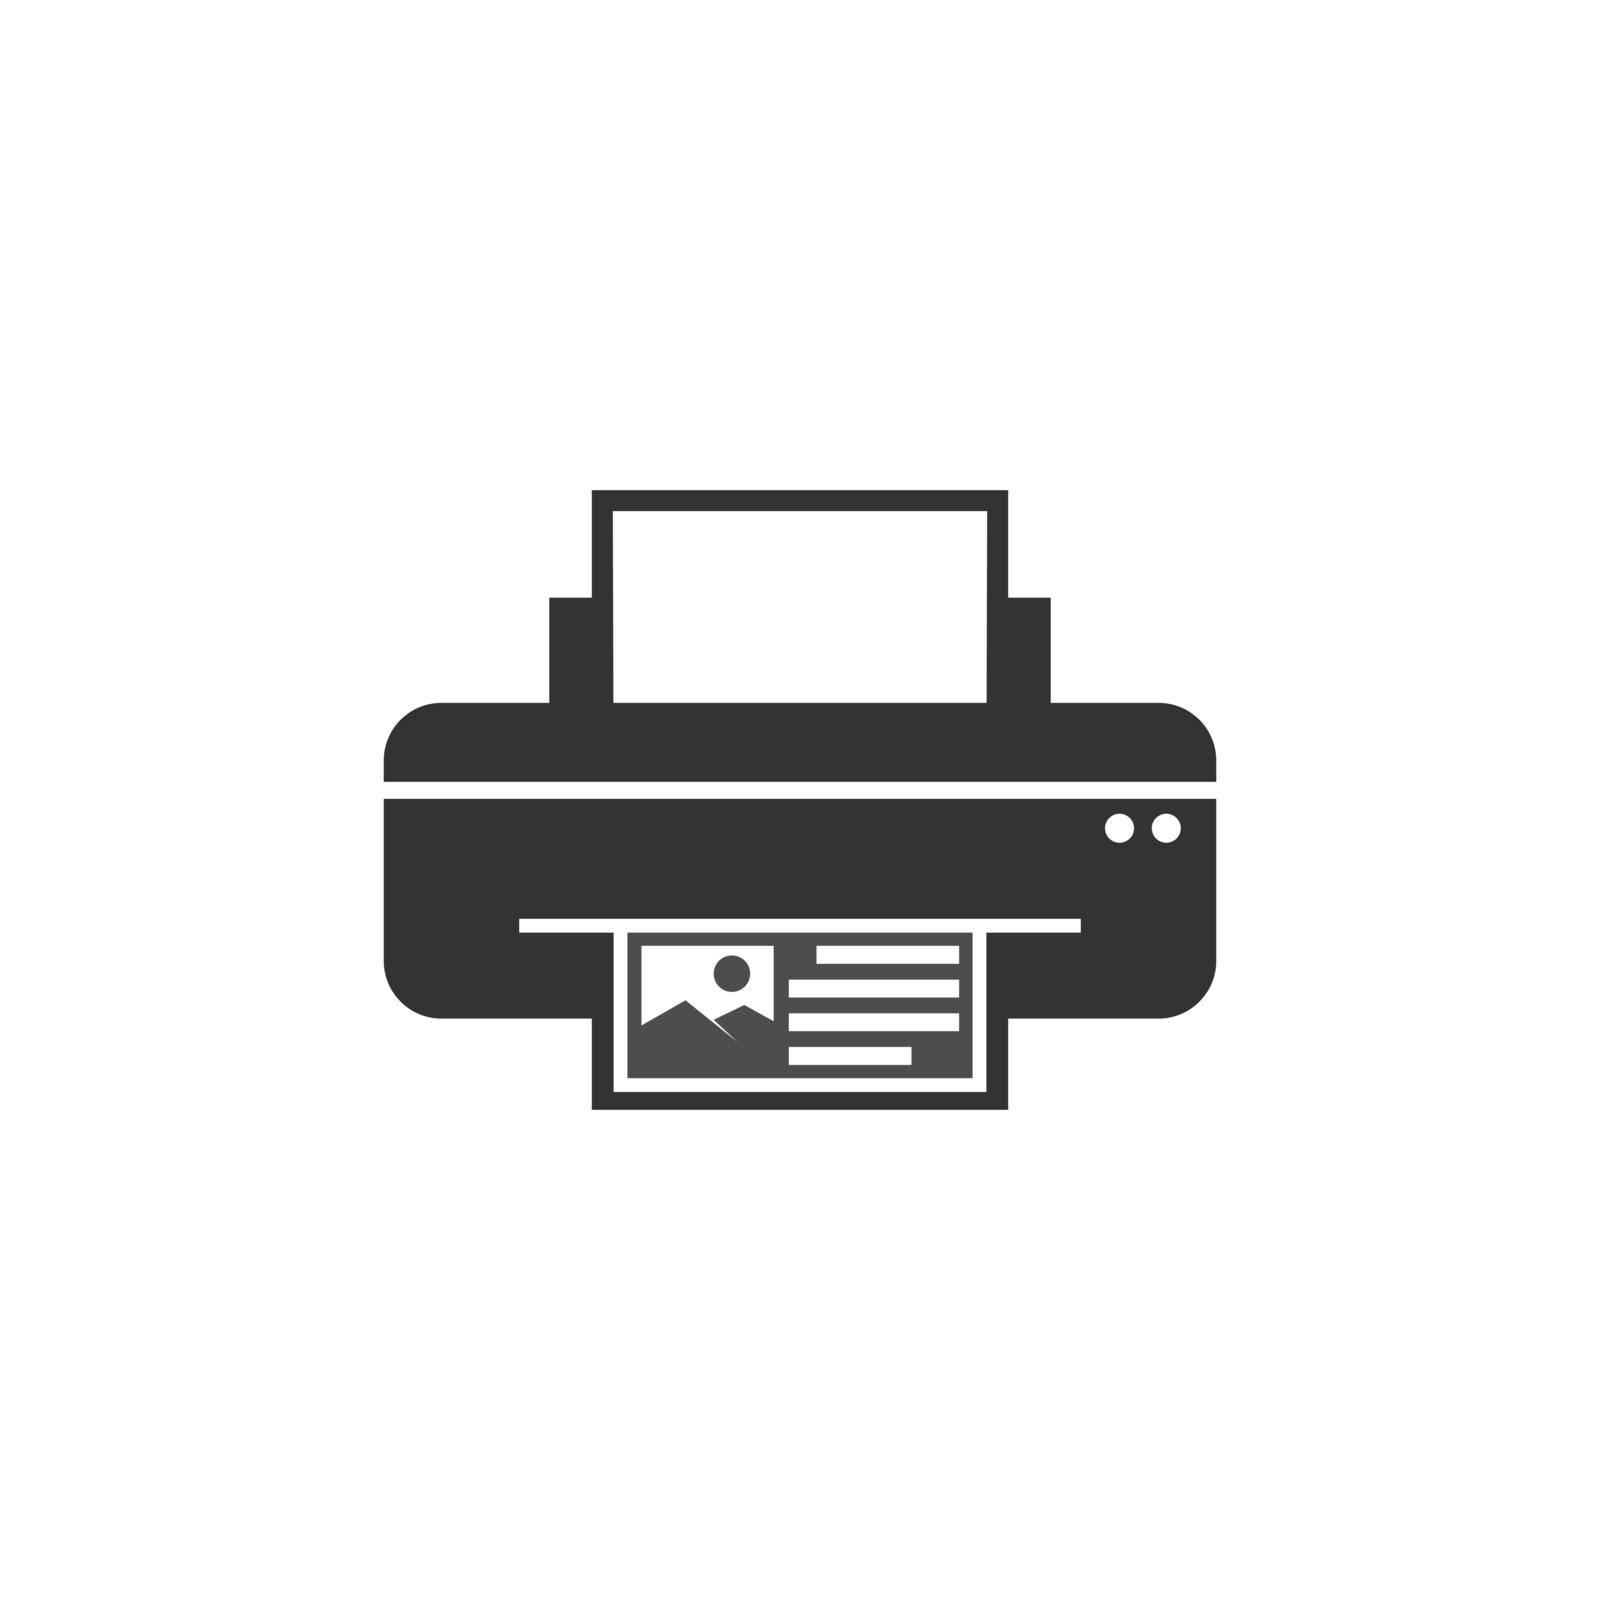 Printer icon design illustration by siti